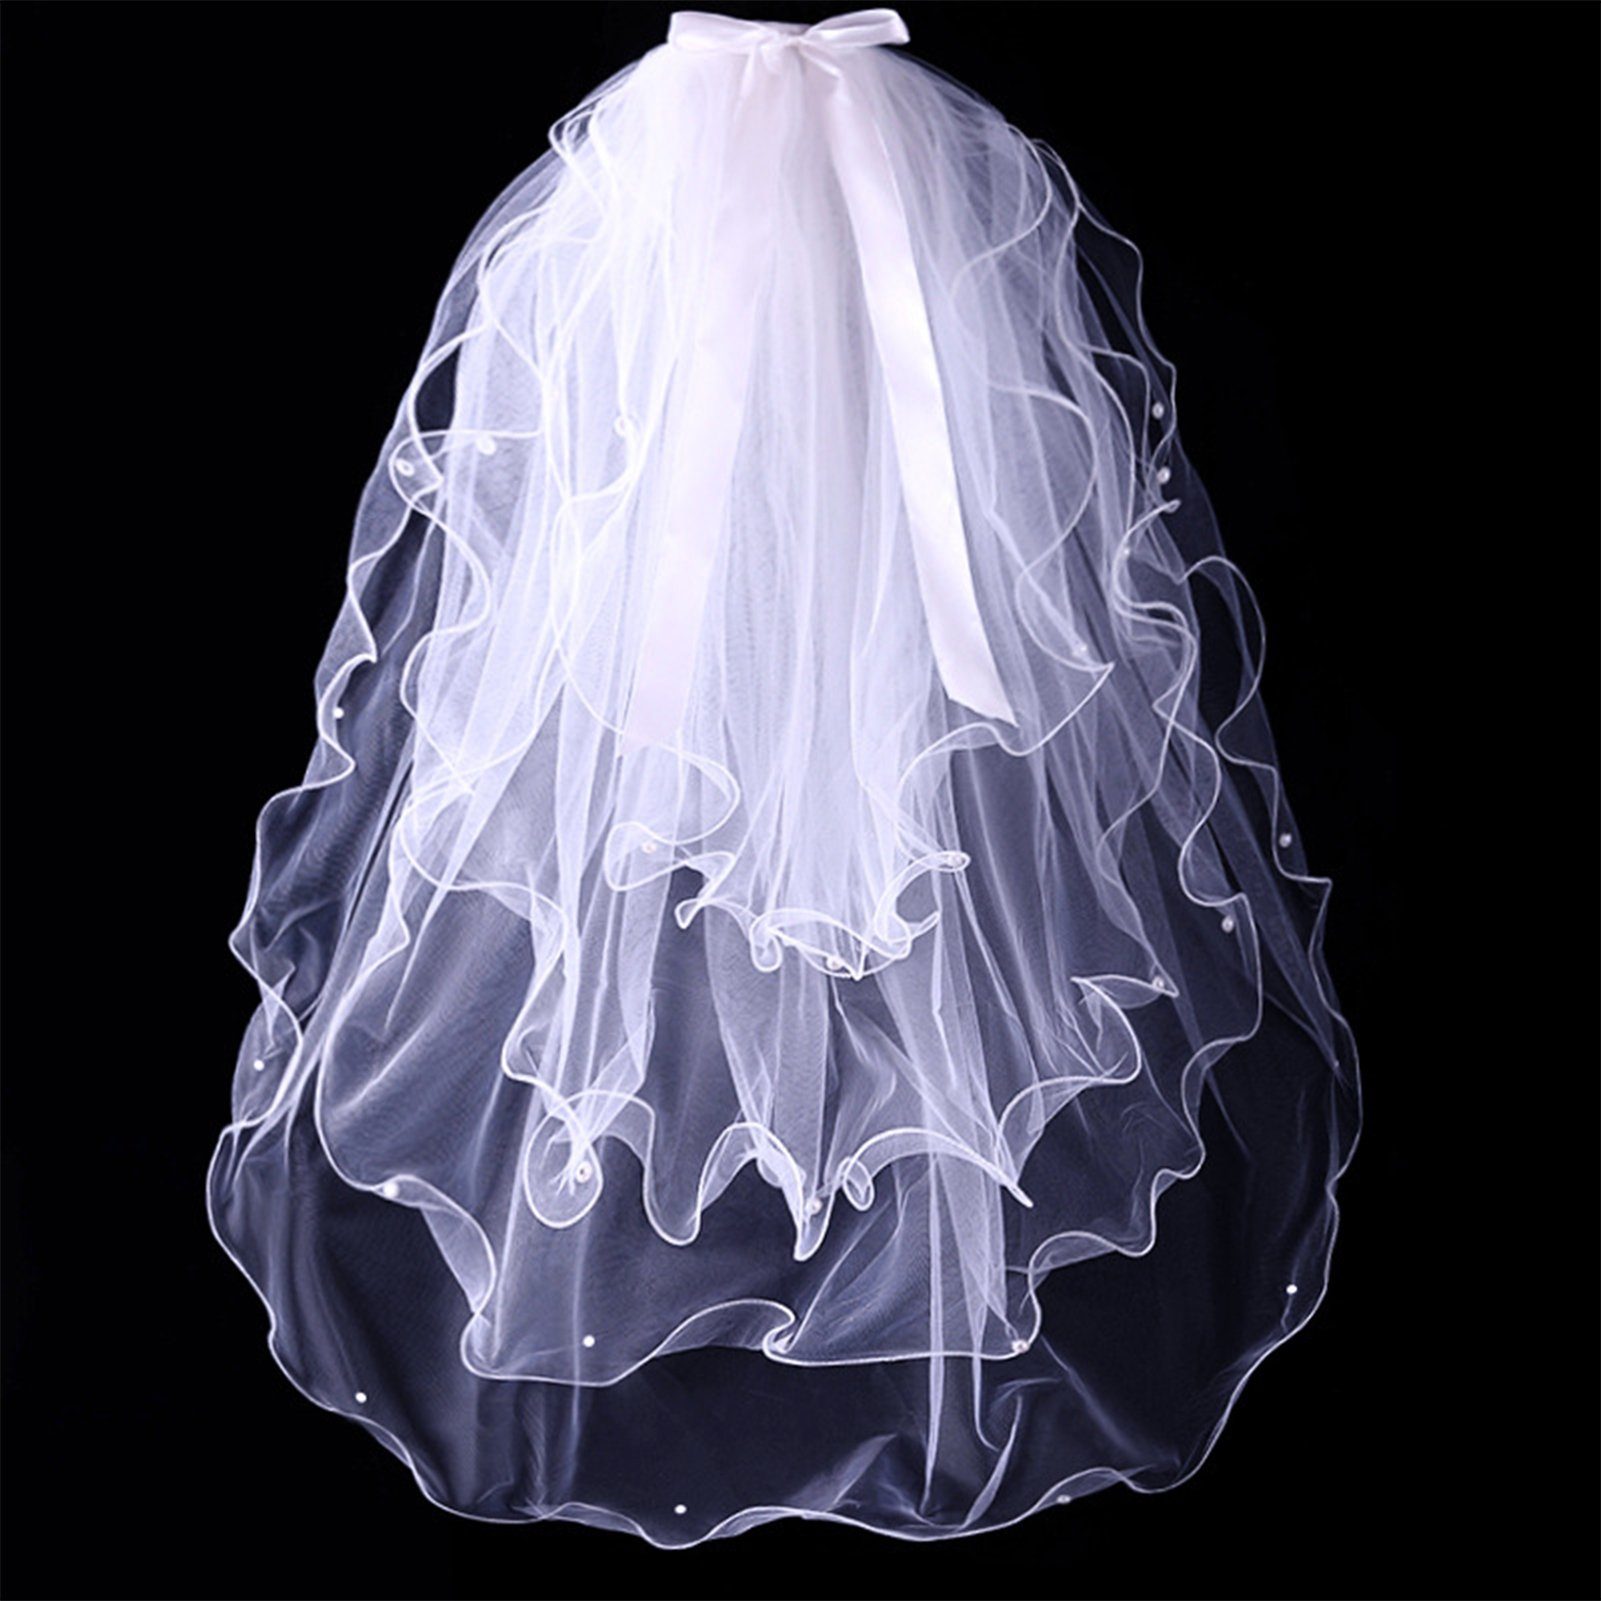 Perlen-Kurzschleier, Damen, Schleier Für Einfacher Hochzeitsschleier B Blusmart 4-stufiger white Brautschleier